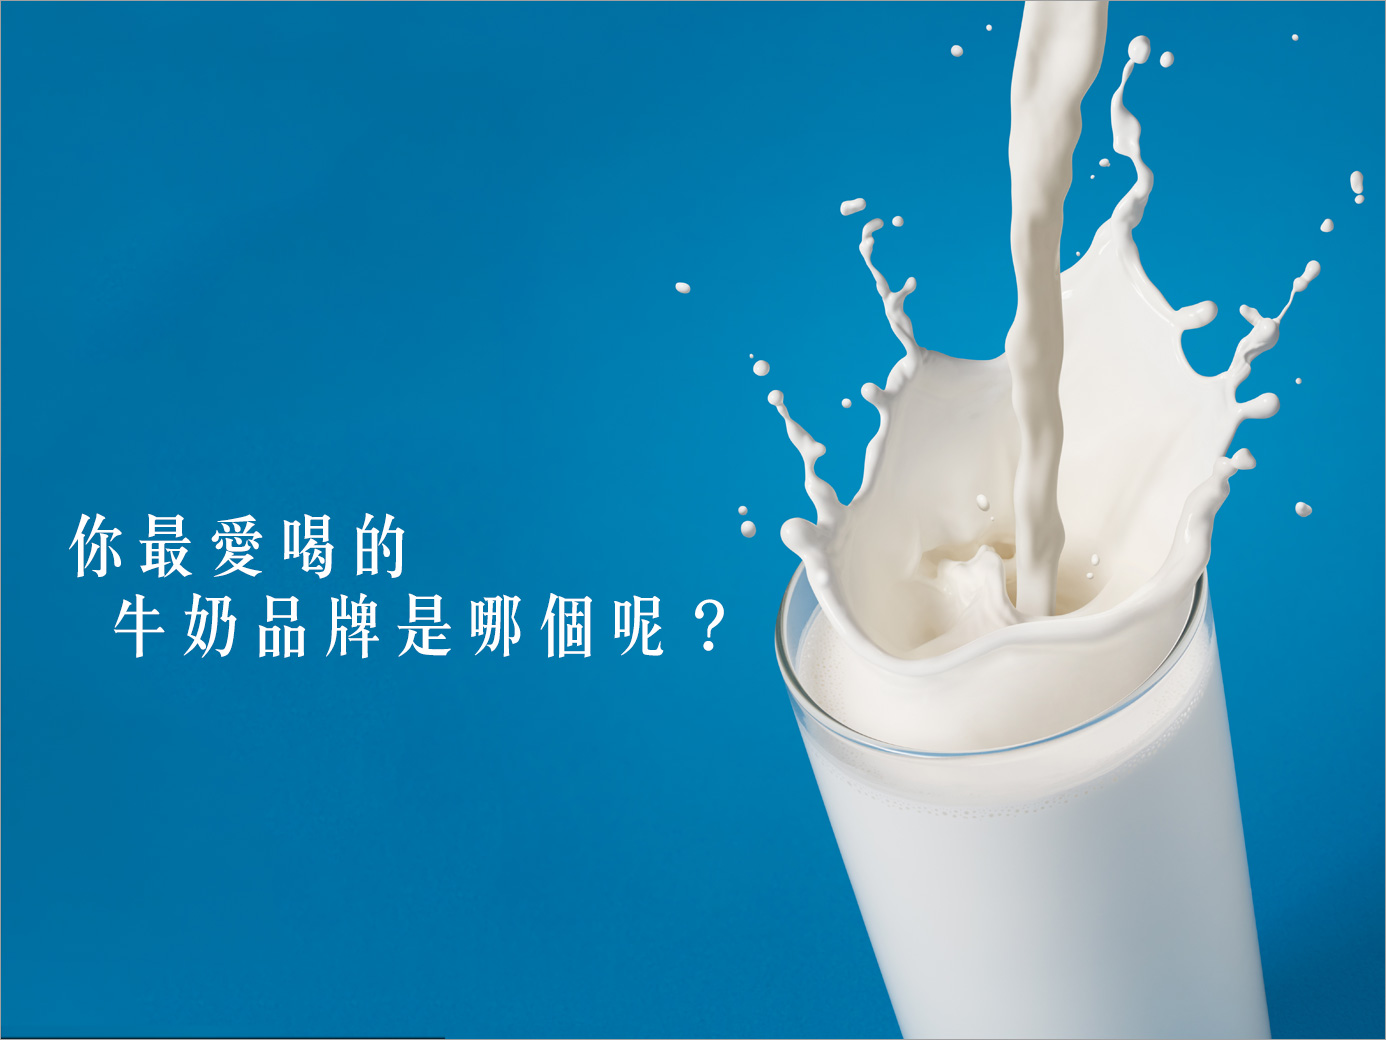 有不少人習慣早上喝一杯牛奶，而市售的牛奶品牌眾多，你最愛喝的是哪一個品牌呢？